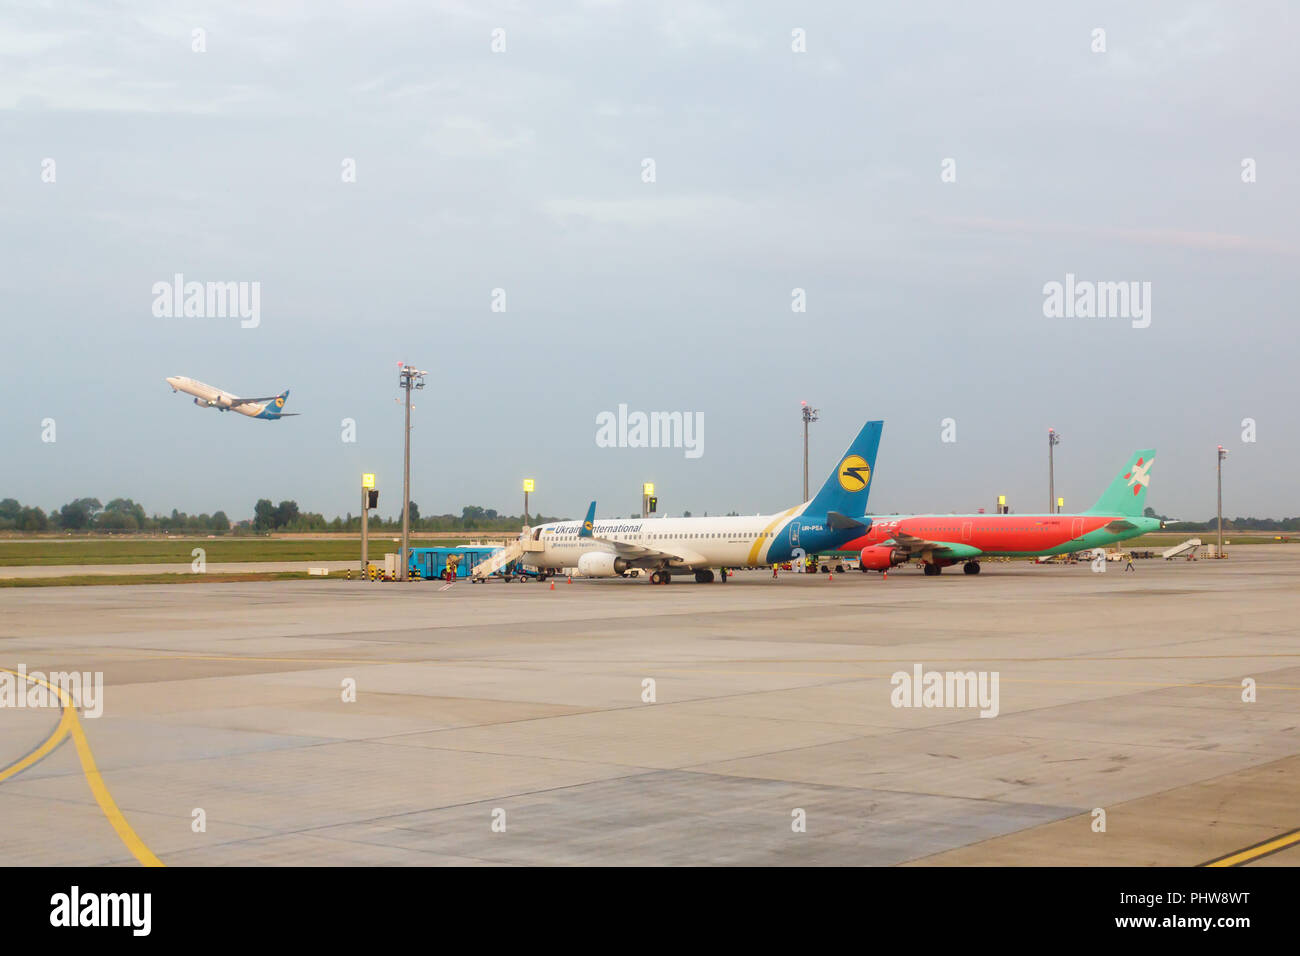 Kiew, Ukraine - 22. August 2016: Auf dem Parkplatz am Flughafen Zhulyany Boeing 737-800 (UR-PSA) und Airbus A 321-211 (UR-WRO) Airlines Ukraine Internat Stockfoto